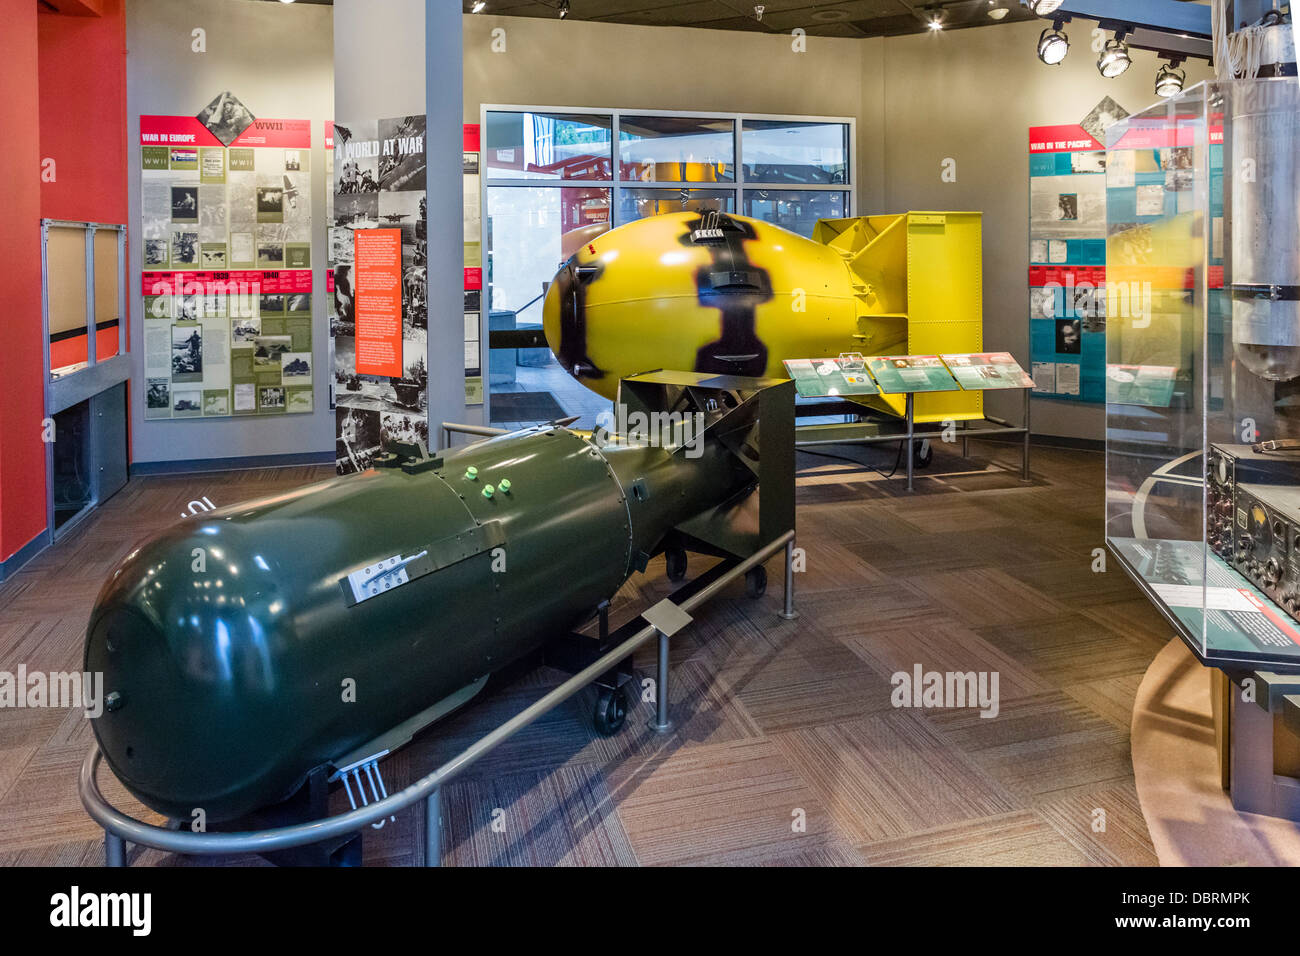 Modèles de bombes atomiques 'Little Boy' (premier plan) et 'Fat Man' (jaune), Bradbury Science Museum, Los Alamos, New Mexico, USA Banque D'Images